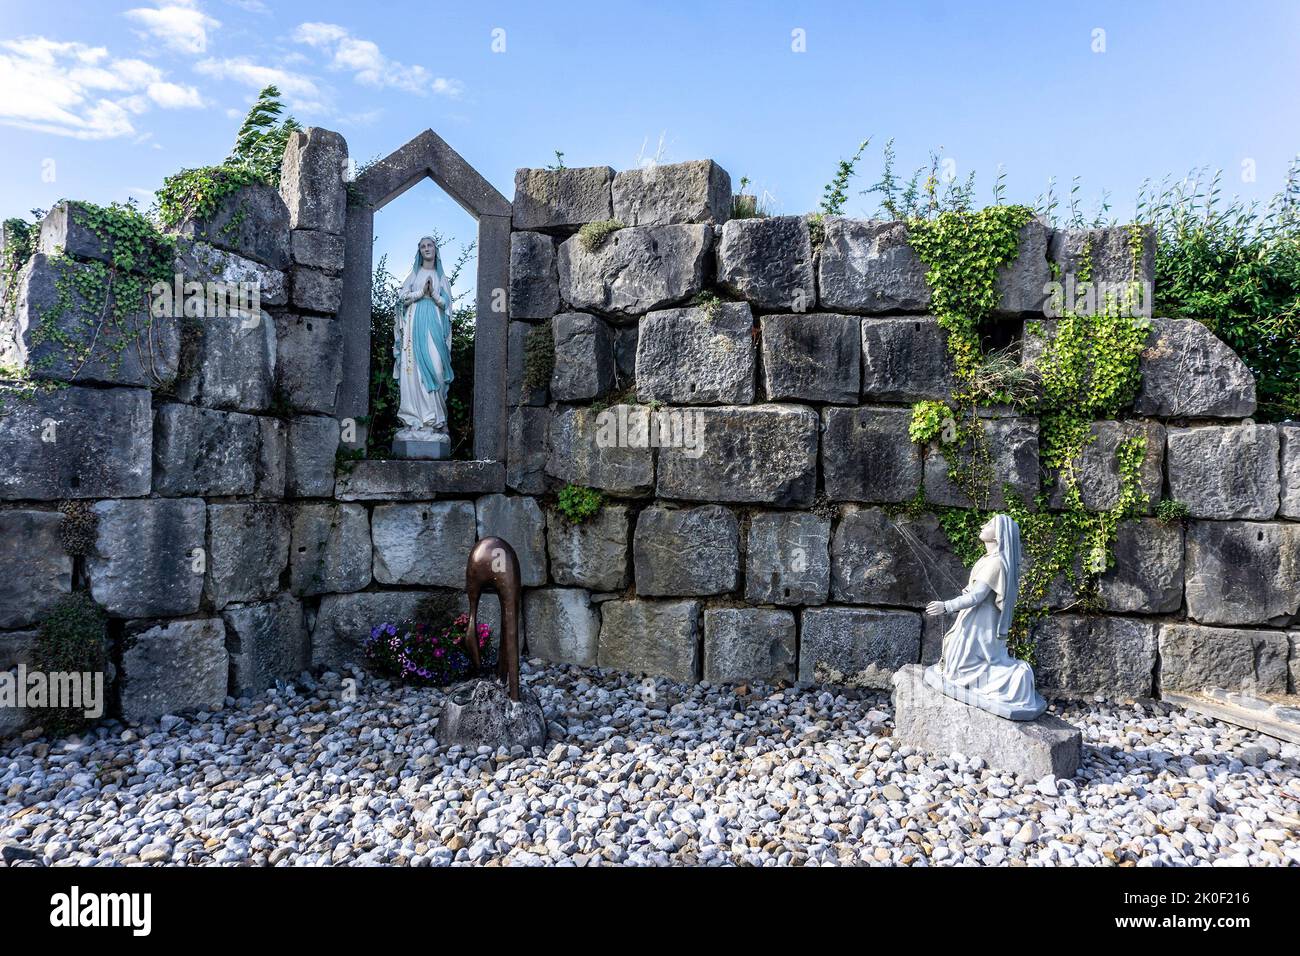 Die Grotte der Muttergottes im Dorf Tarmonbarry, Roscommon, Irland. Der Bildhauer Michael Casey wurde 2010 renoviert und wiedereröffnet. Stockfoto